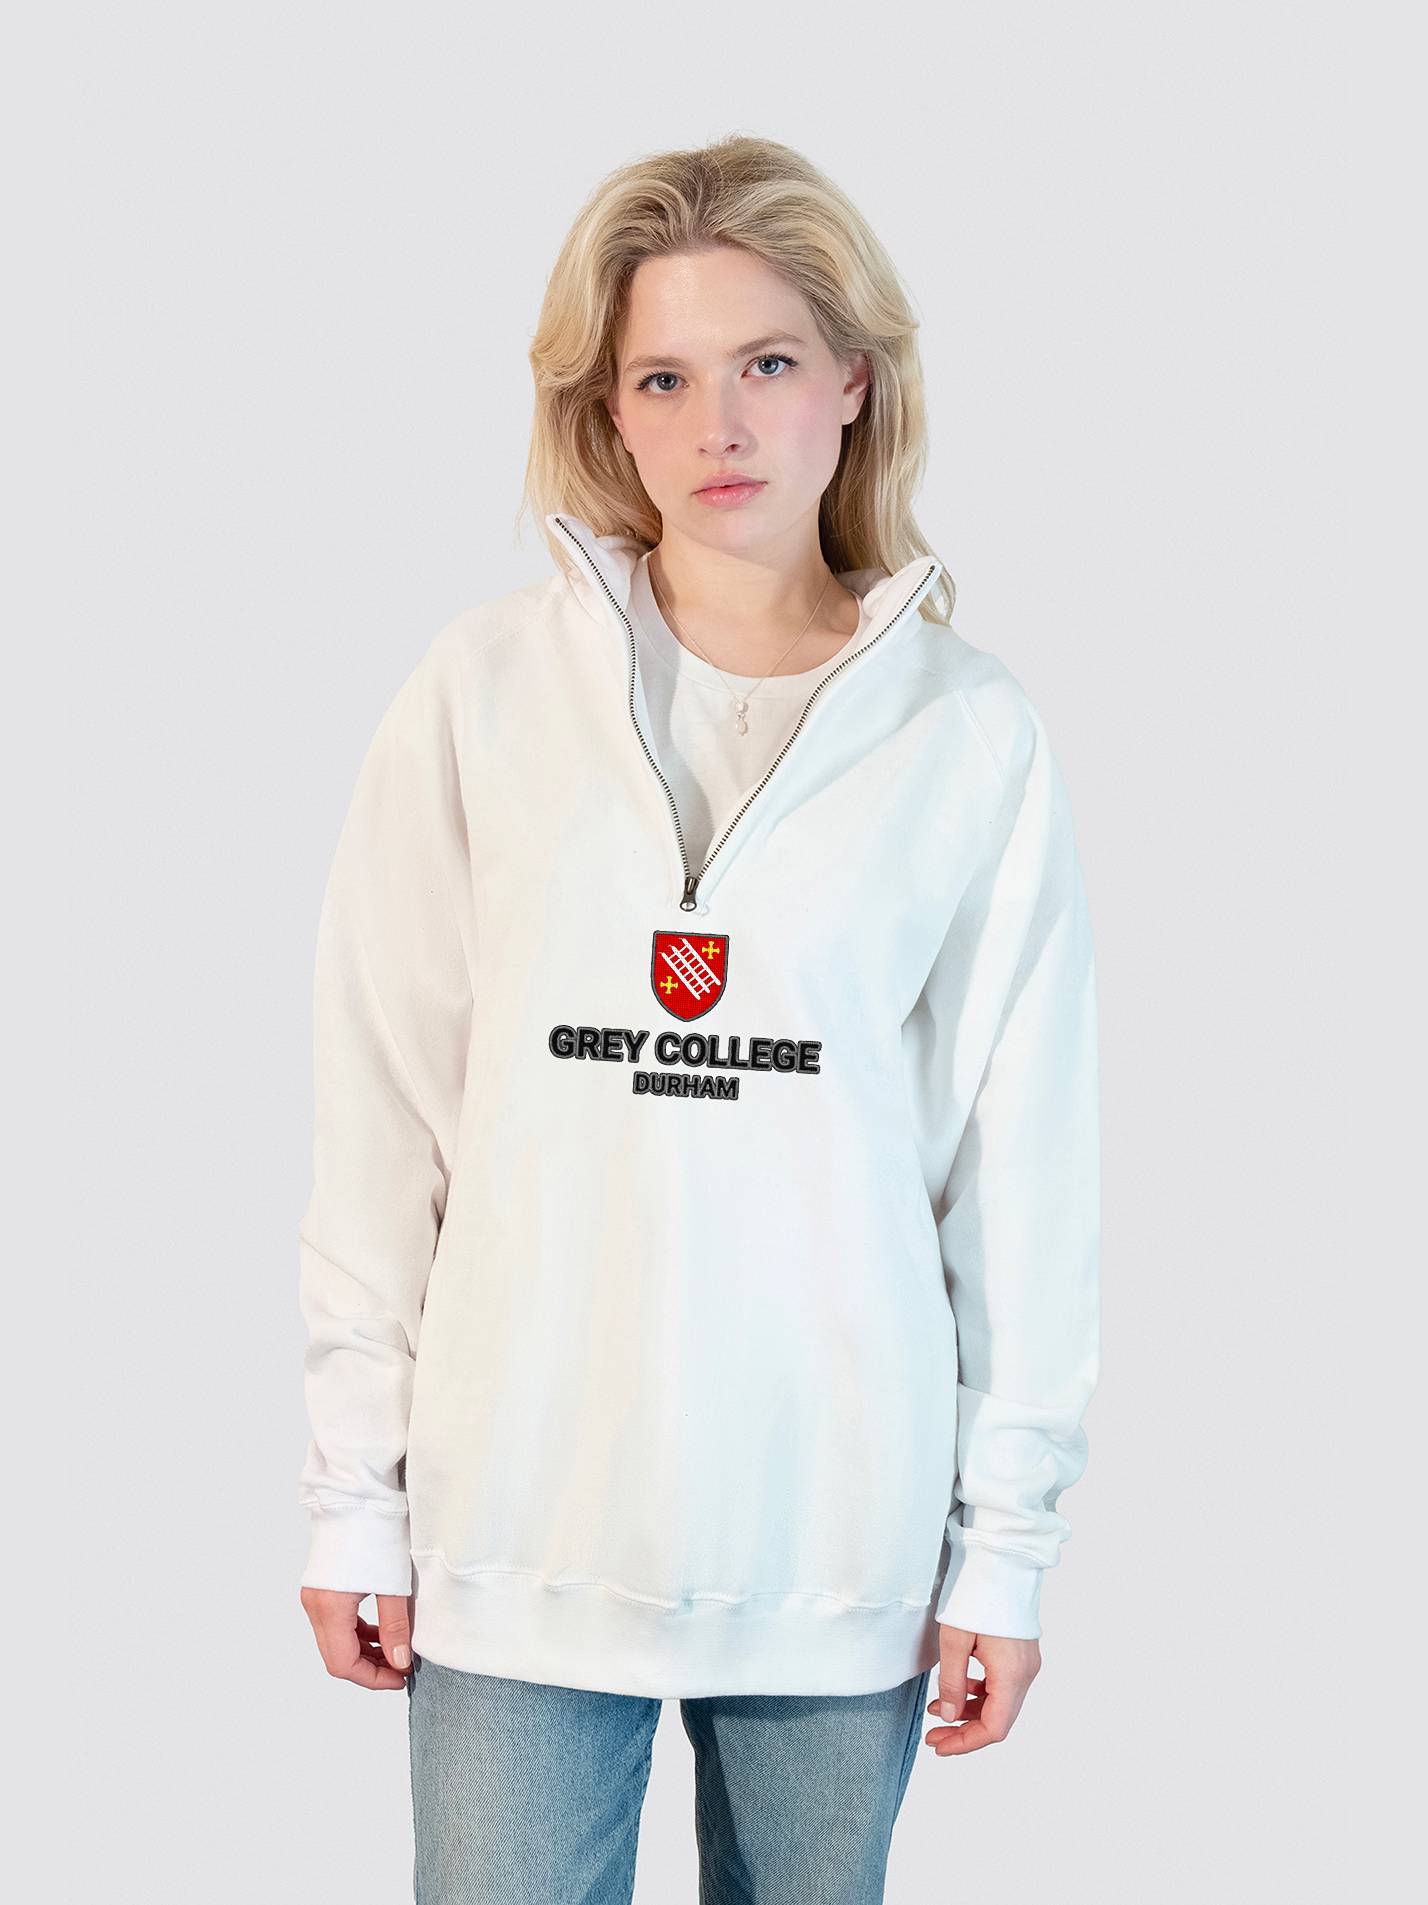 Grey College Durham Heritage Unisex 1/4 Zip Sweatshirt